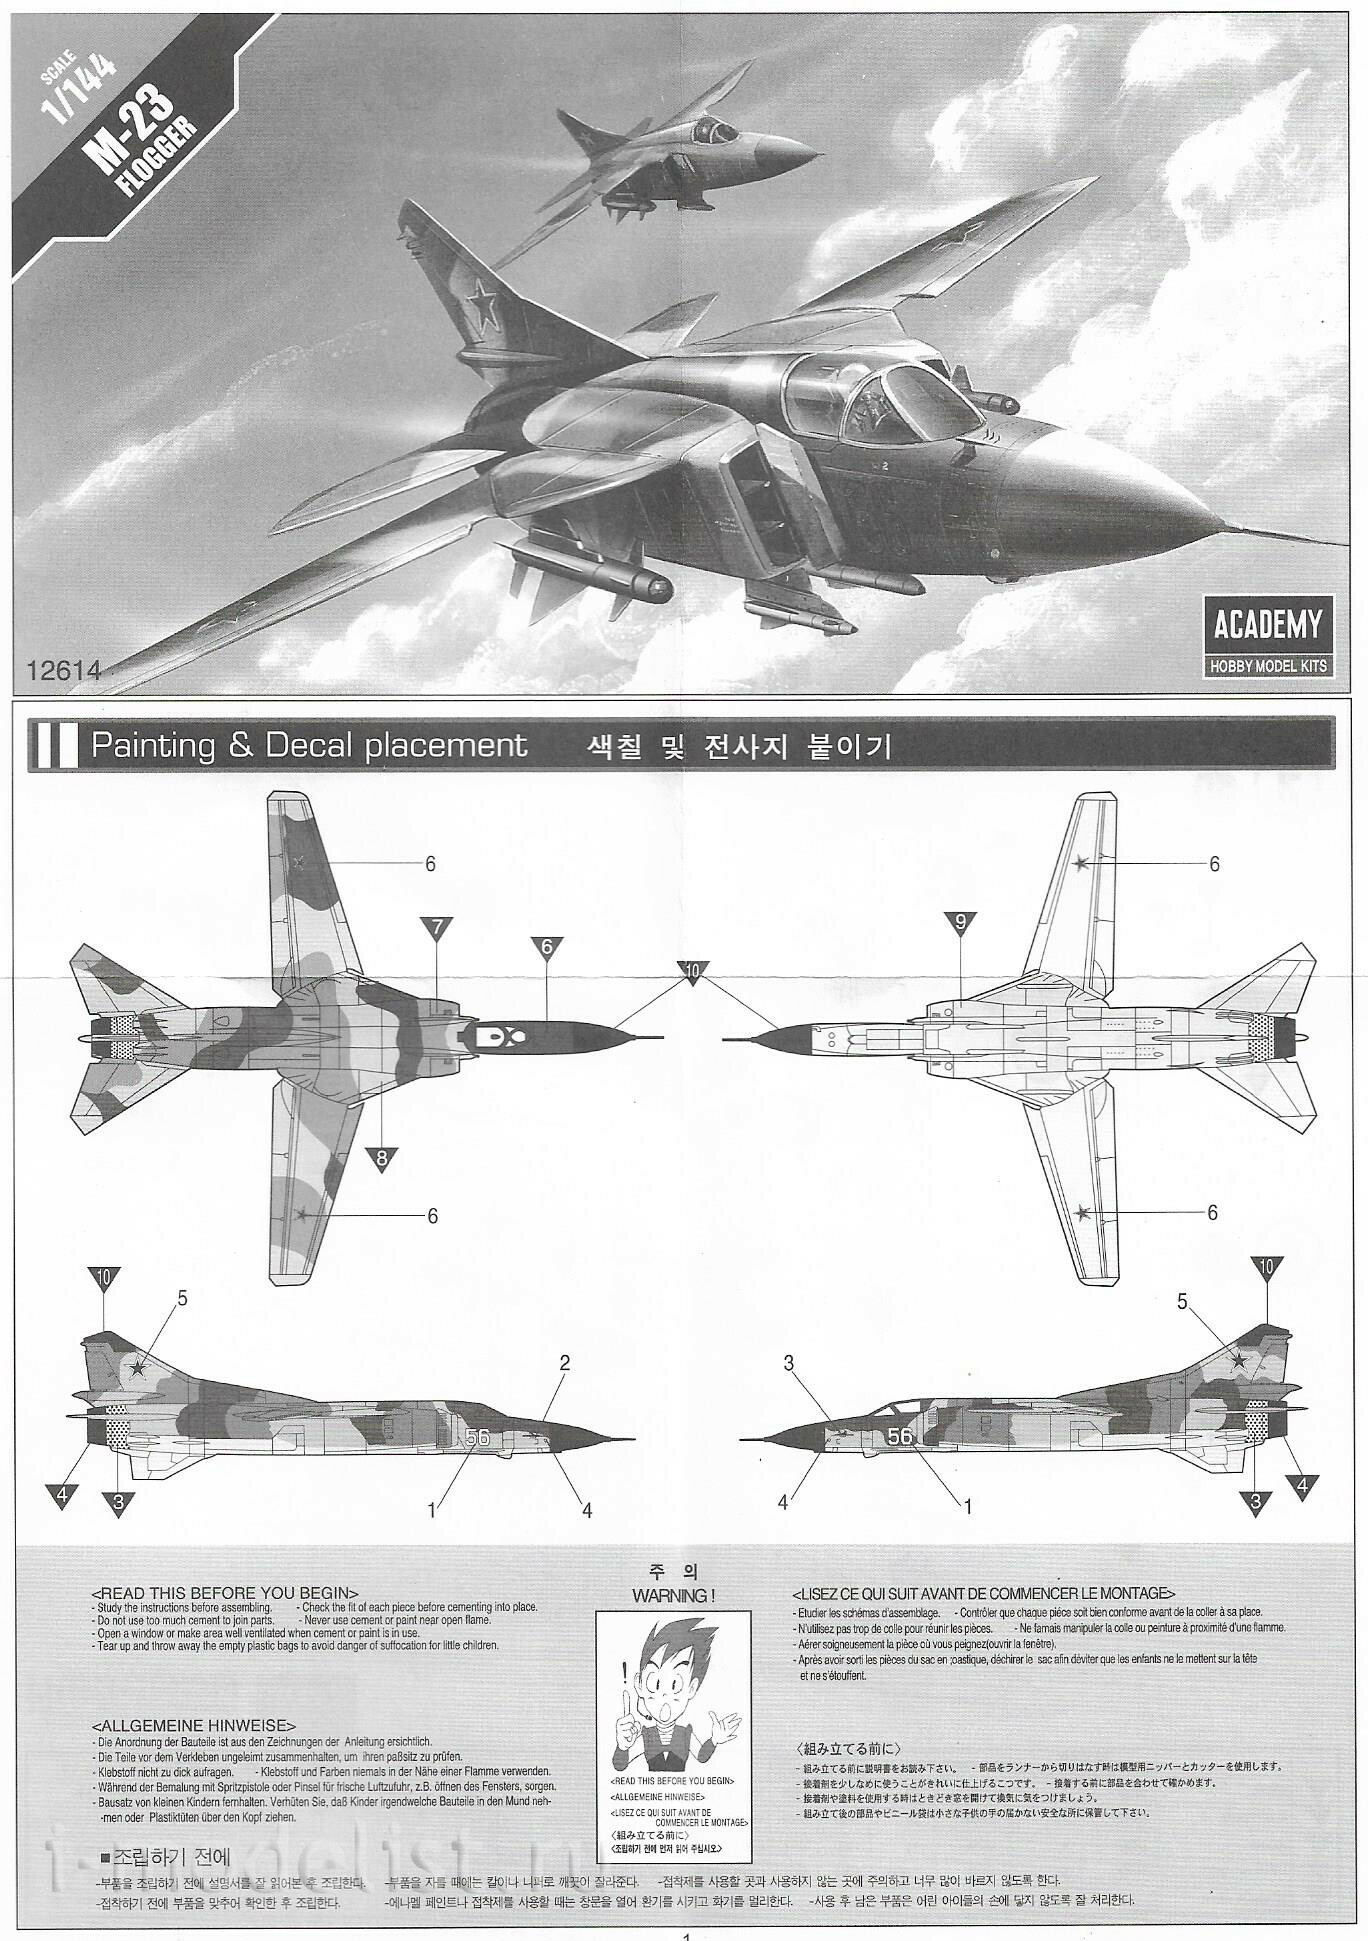 12614 Academy 1/144 Самолёт MiGG-23